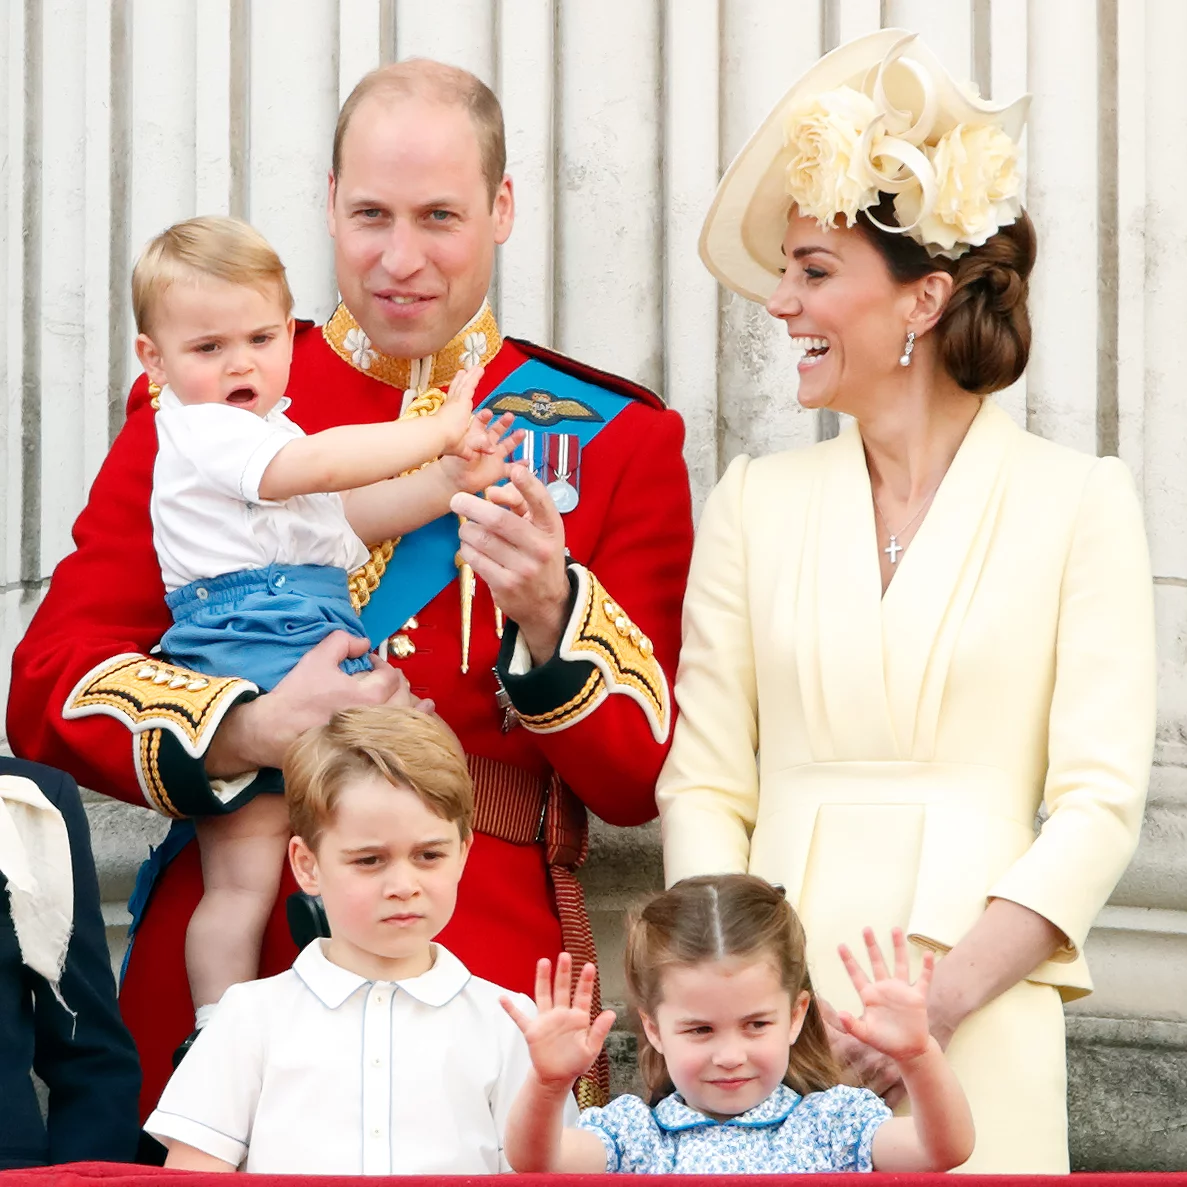 Кейт миддлтон фотошоп с детьми. Принц Умльям и Кейт Мидлтон. Принц Уильям и Кейт Миддлтон. Дети Кейт Миддлтон и принца Уильяма. Принц Вильям и Кейт дети.